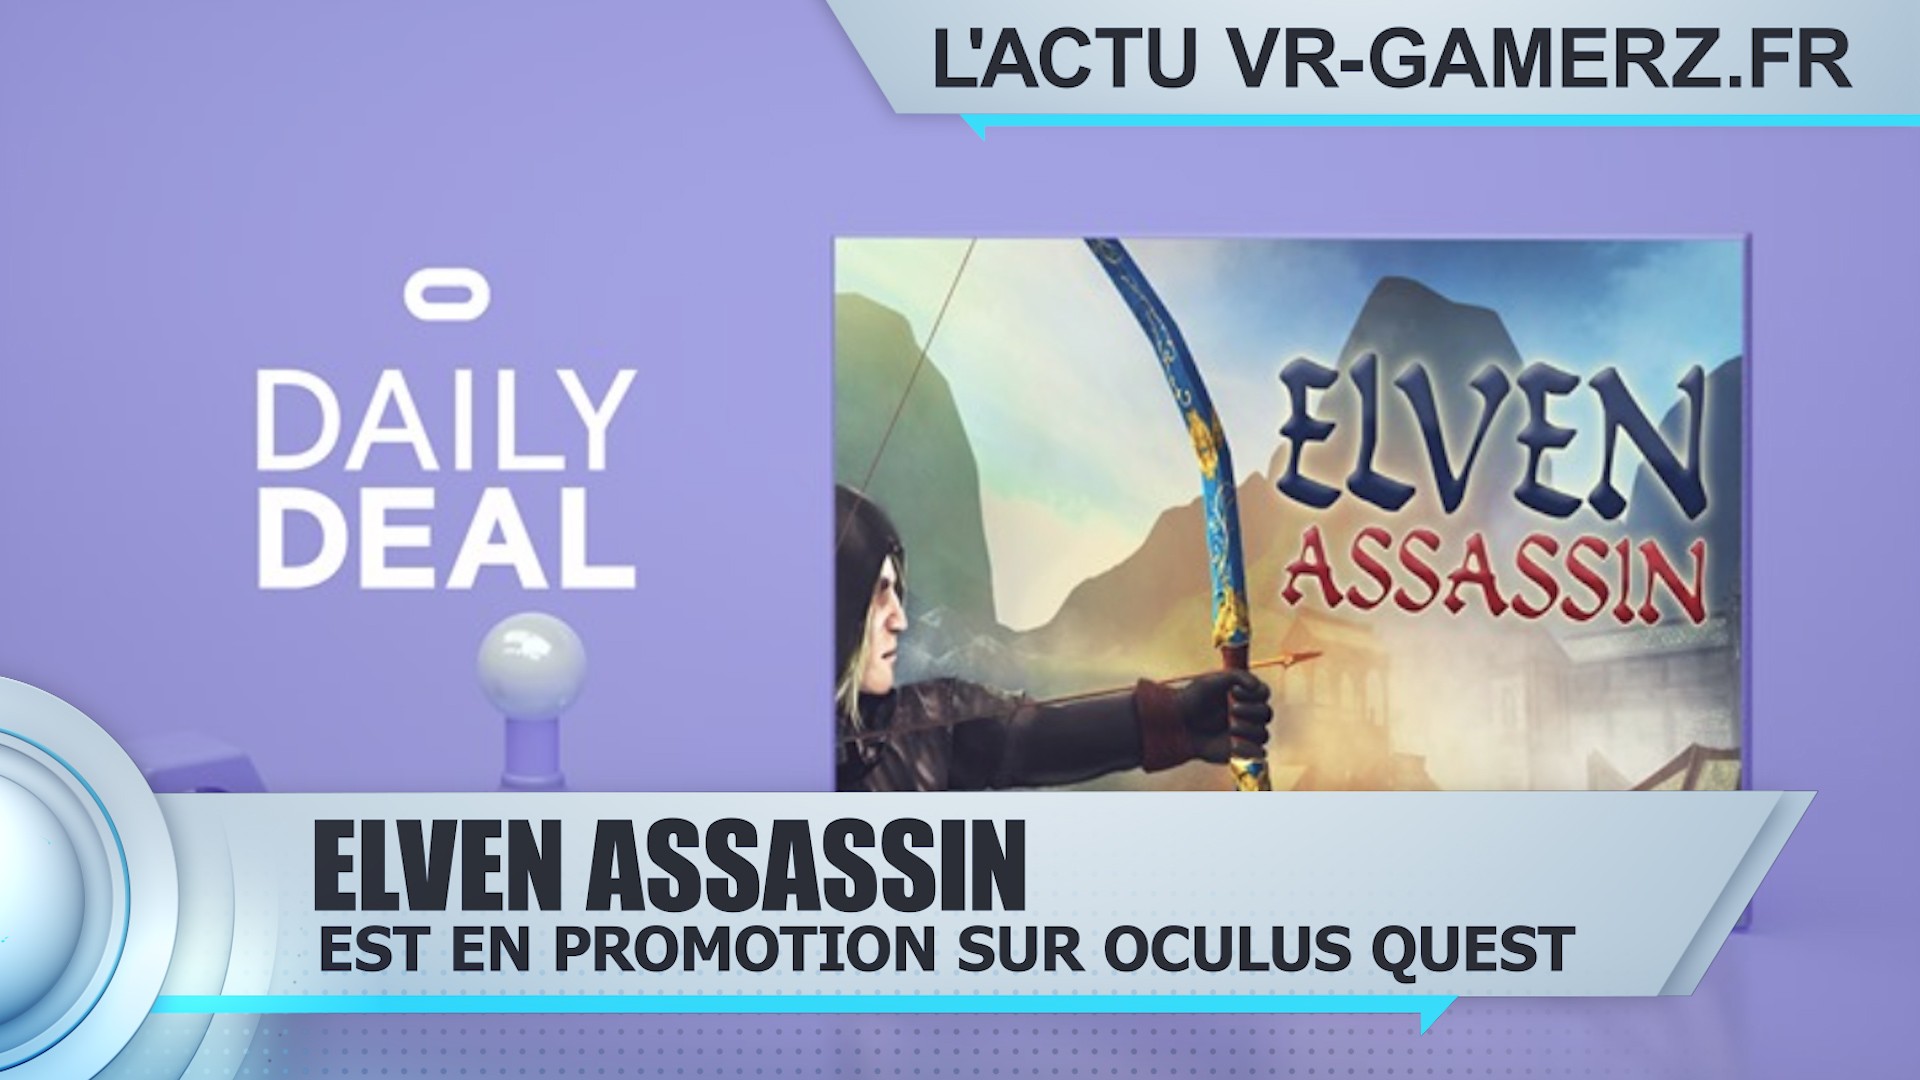 Elven Assassin est en promotion sur Oculus quest